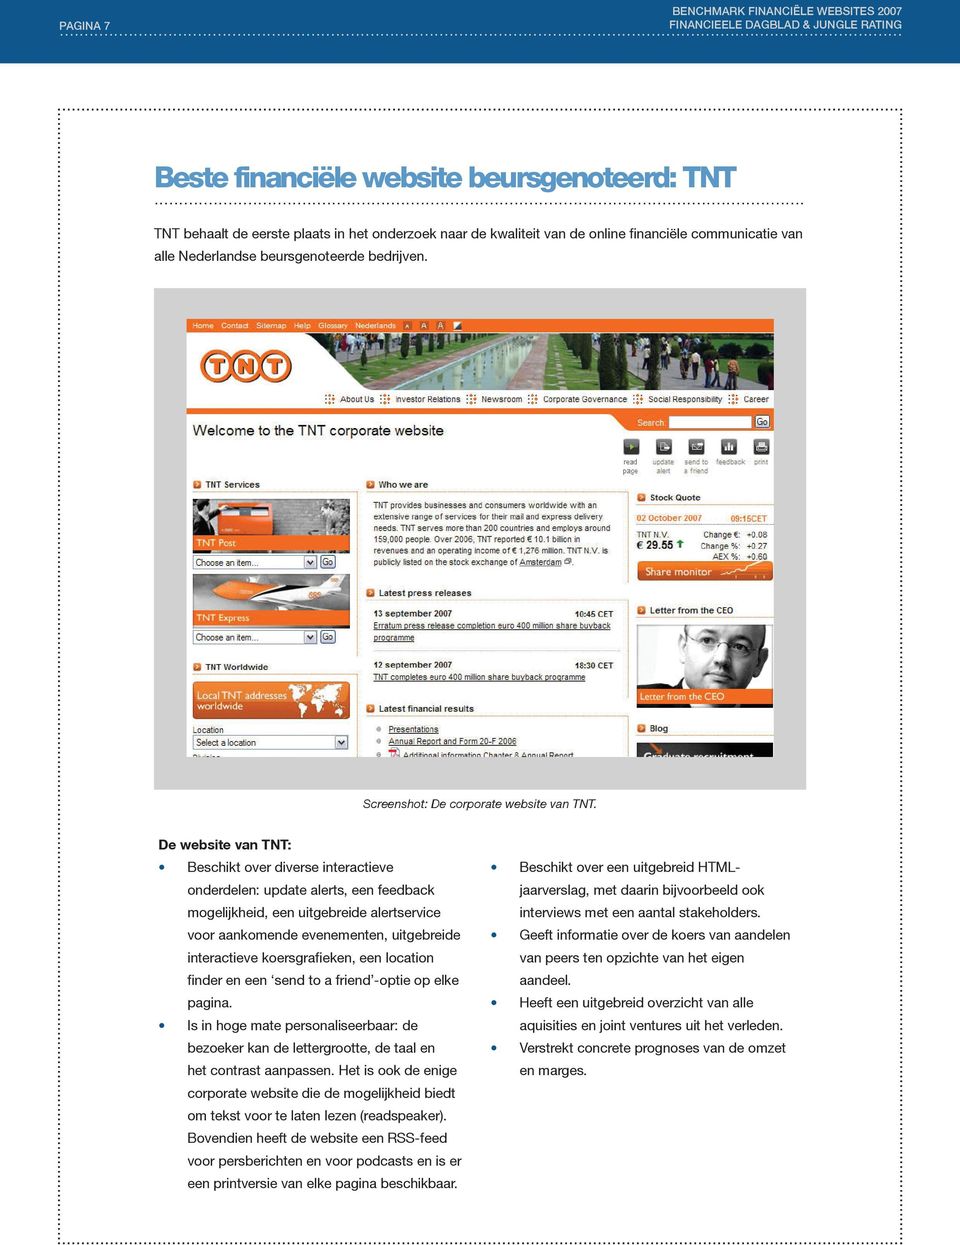 De website van TNT: Beschikt over diverse interactieve onderdelen: update alerts, een feedback mogelijkheid, een uitgebreide alertservice voor aankomende evenementen, uitgebreide interactieve